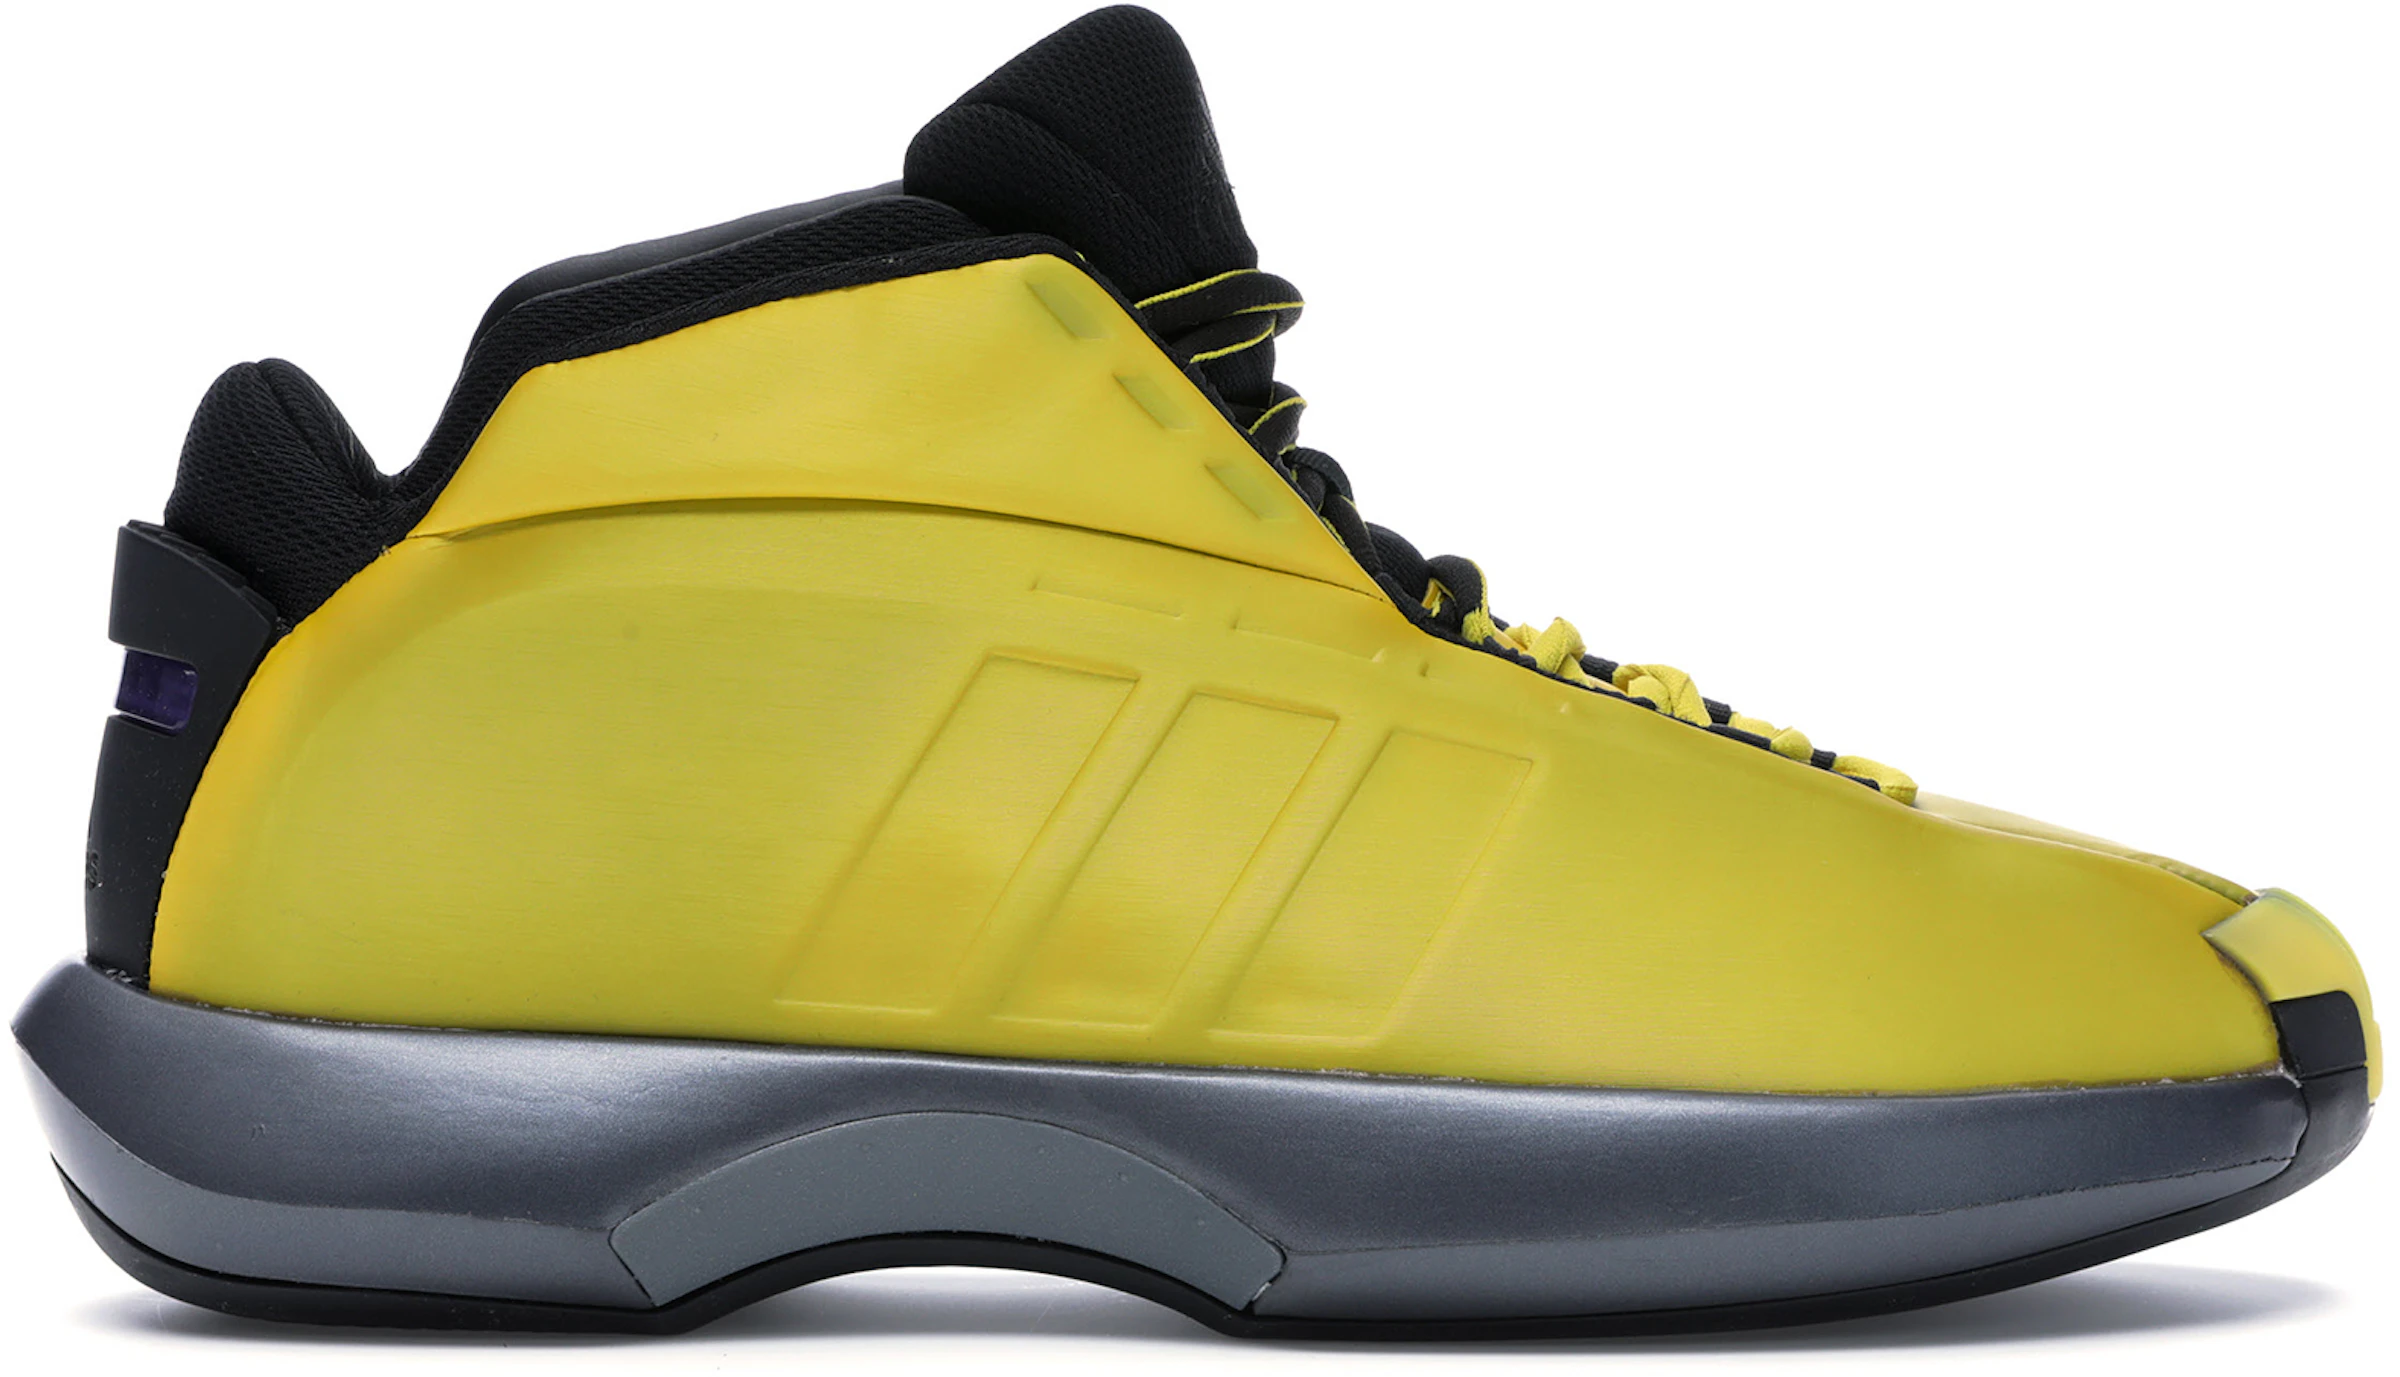 Adidas Basketball Shoes 2006 | lupon.gov.ph